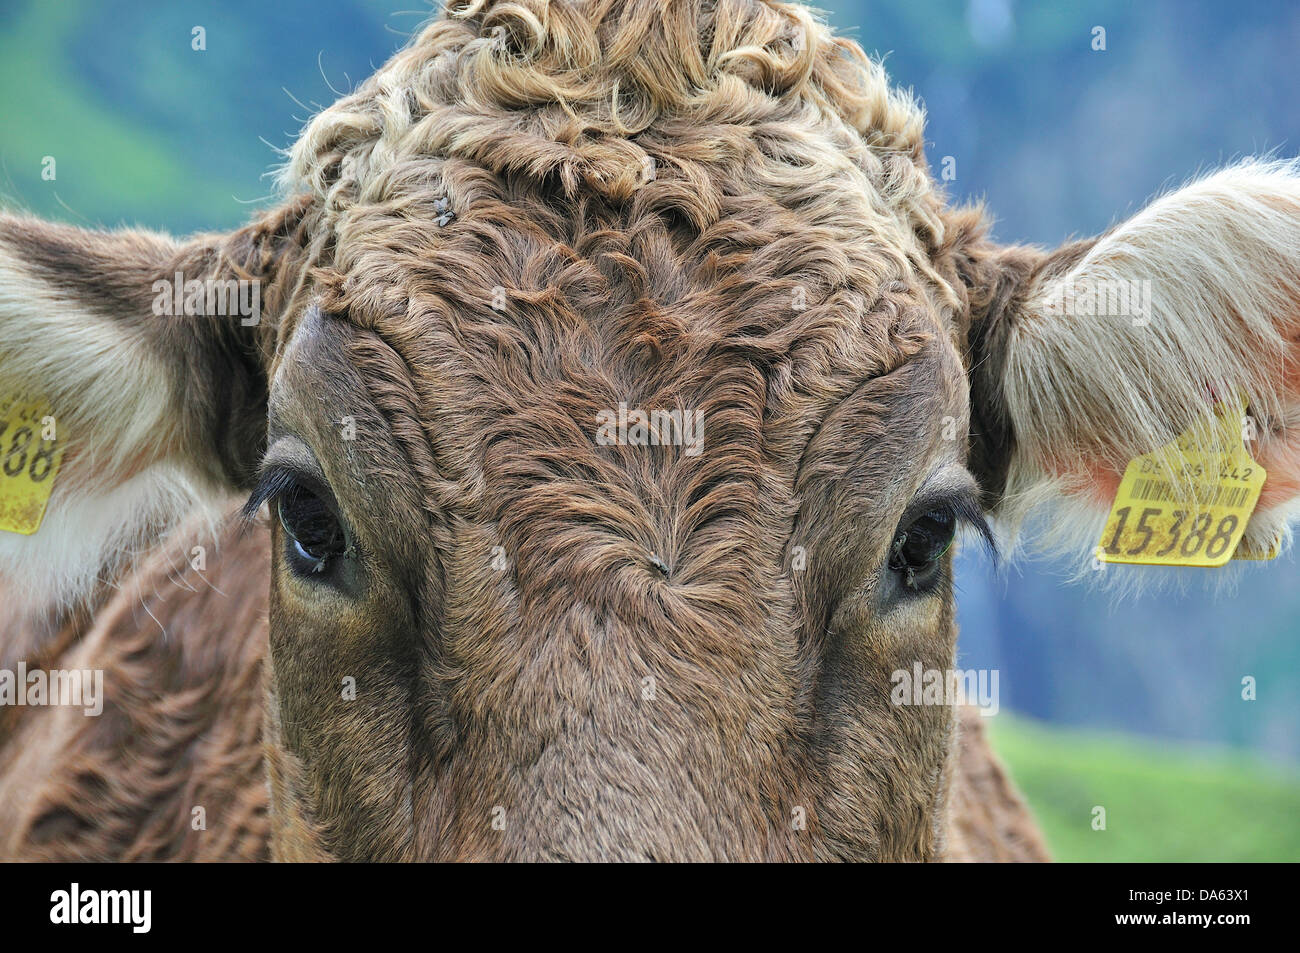 Los jóvenes, bovino, vaca, animal, Bos primigenius taurus, Oytal, Oberstdorf, Allgäu, Alpes de Baviera, Alemania, Europa, agricultur Foto de stock